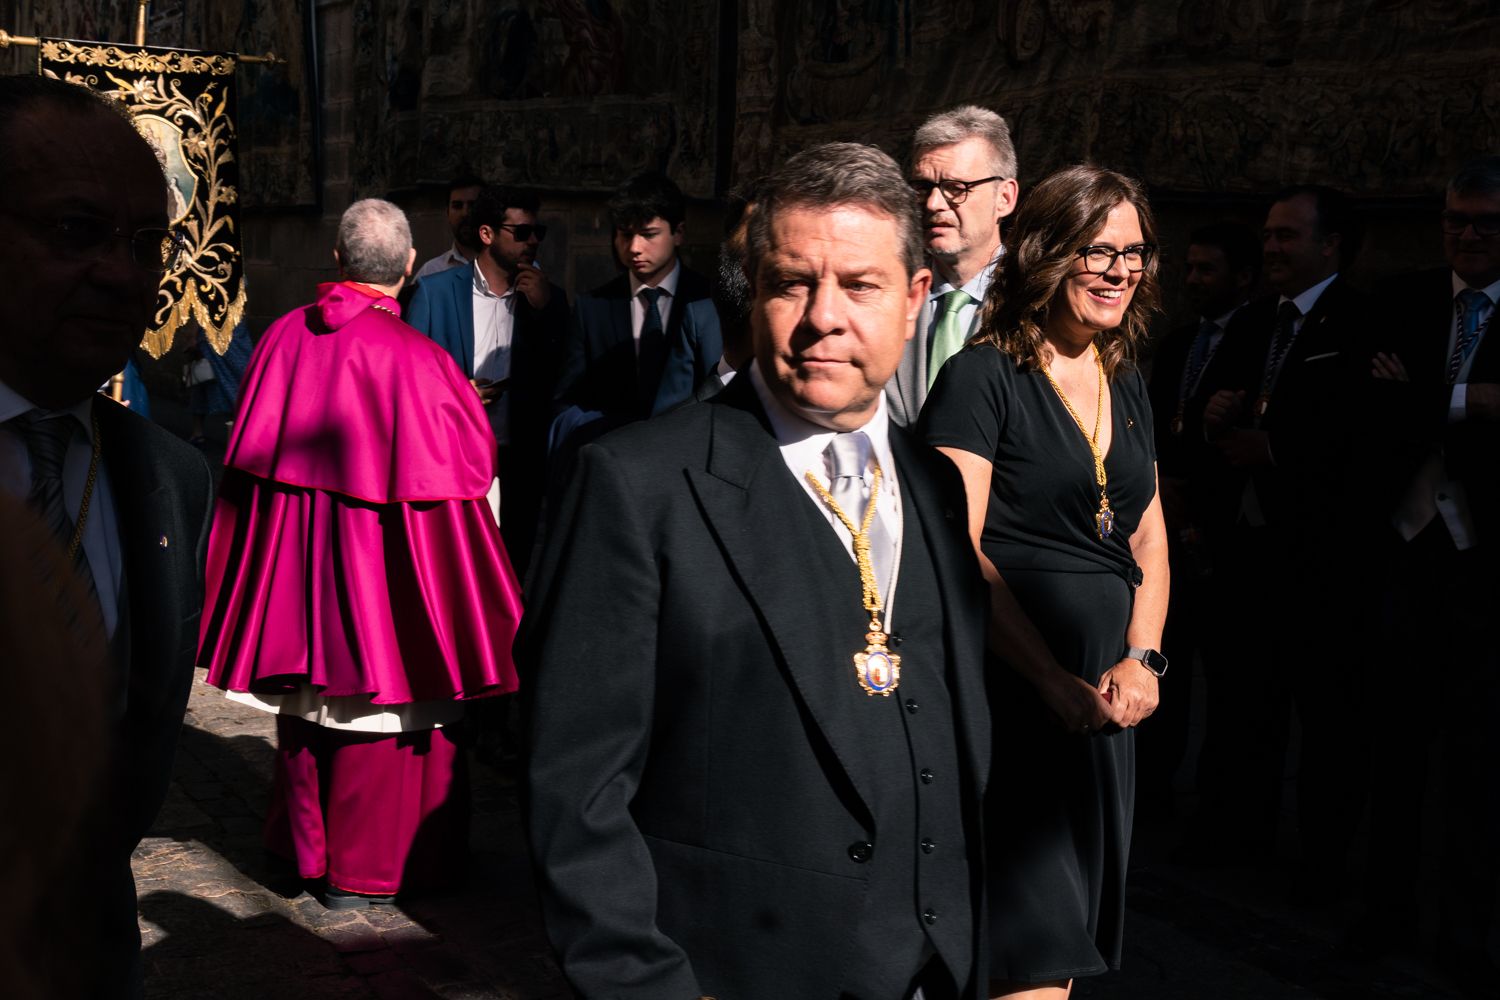 El president de Castella-La Manxa, Emiliano García-Page, durant la celebració de Corpus Christi